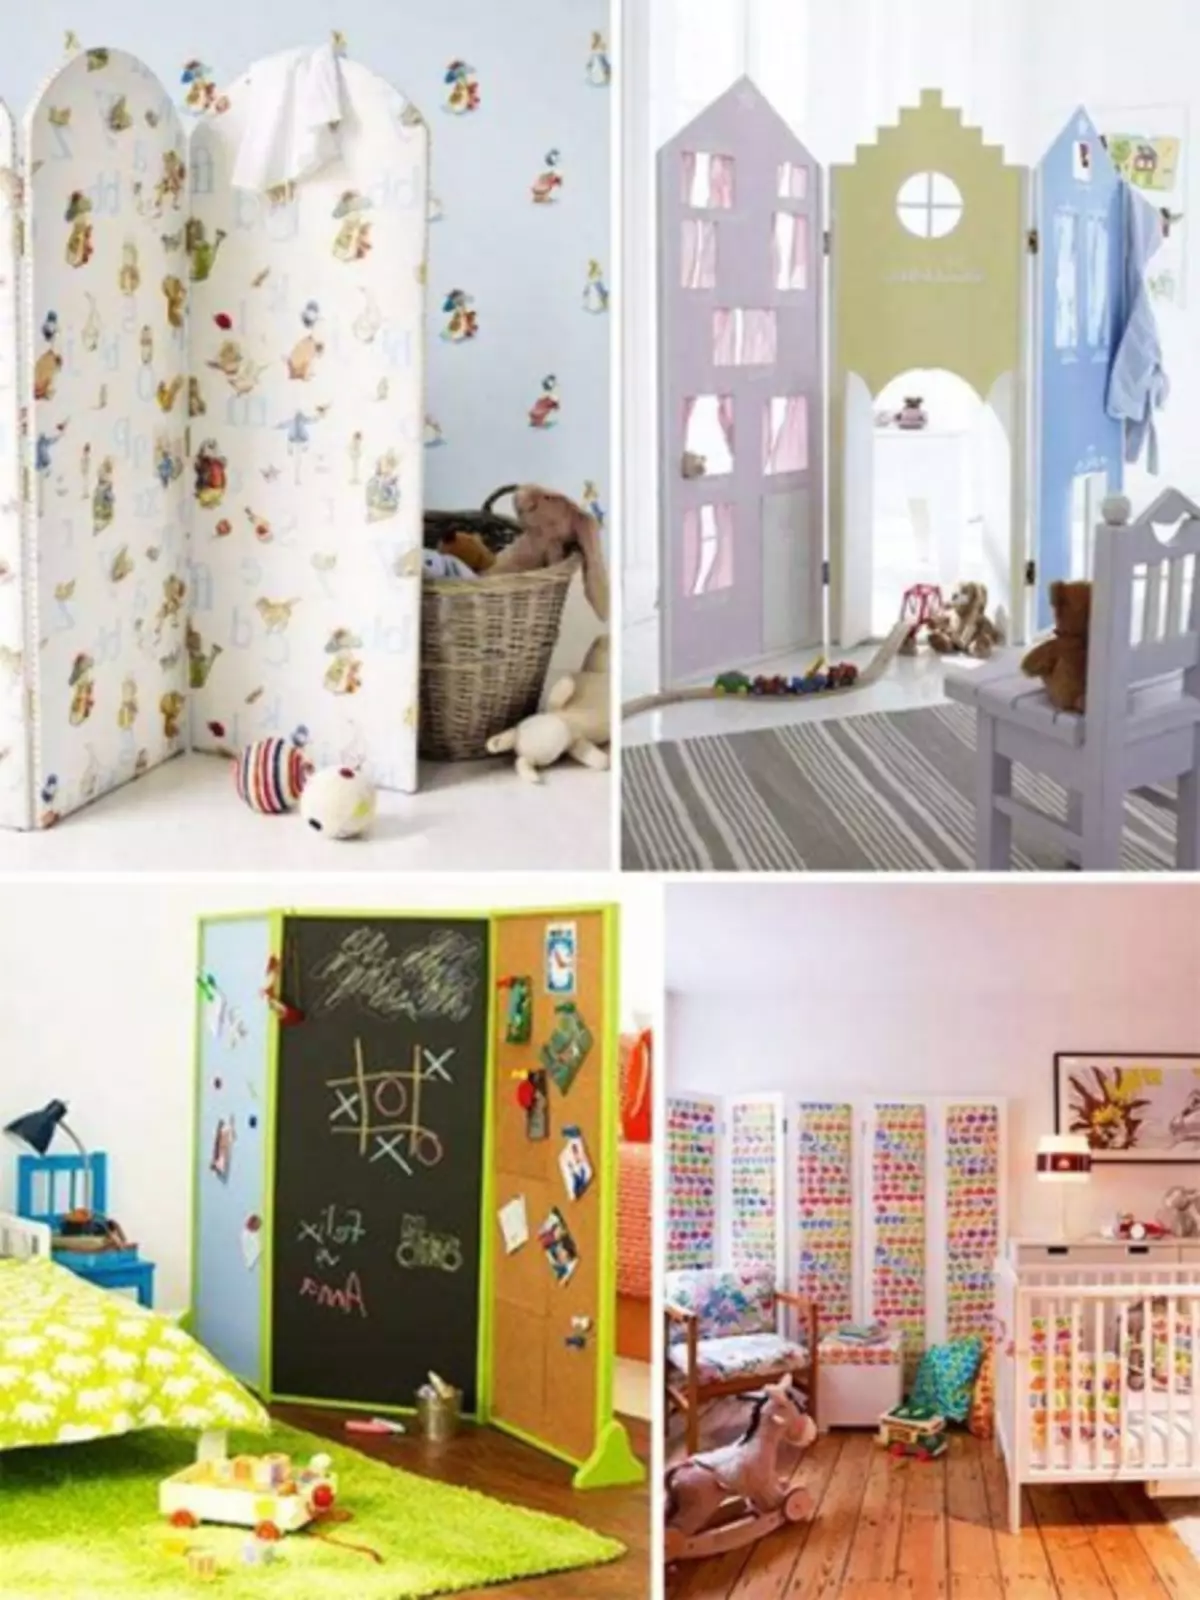 داخلية من الشقة لعائلة شابة مع طفل: خيارات لترتيب الأثاث في الغرف (39 صورة)